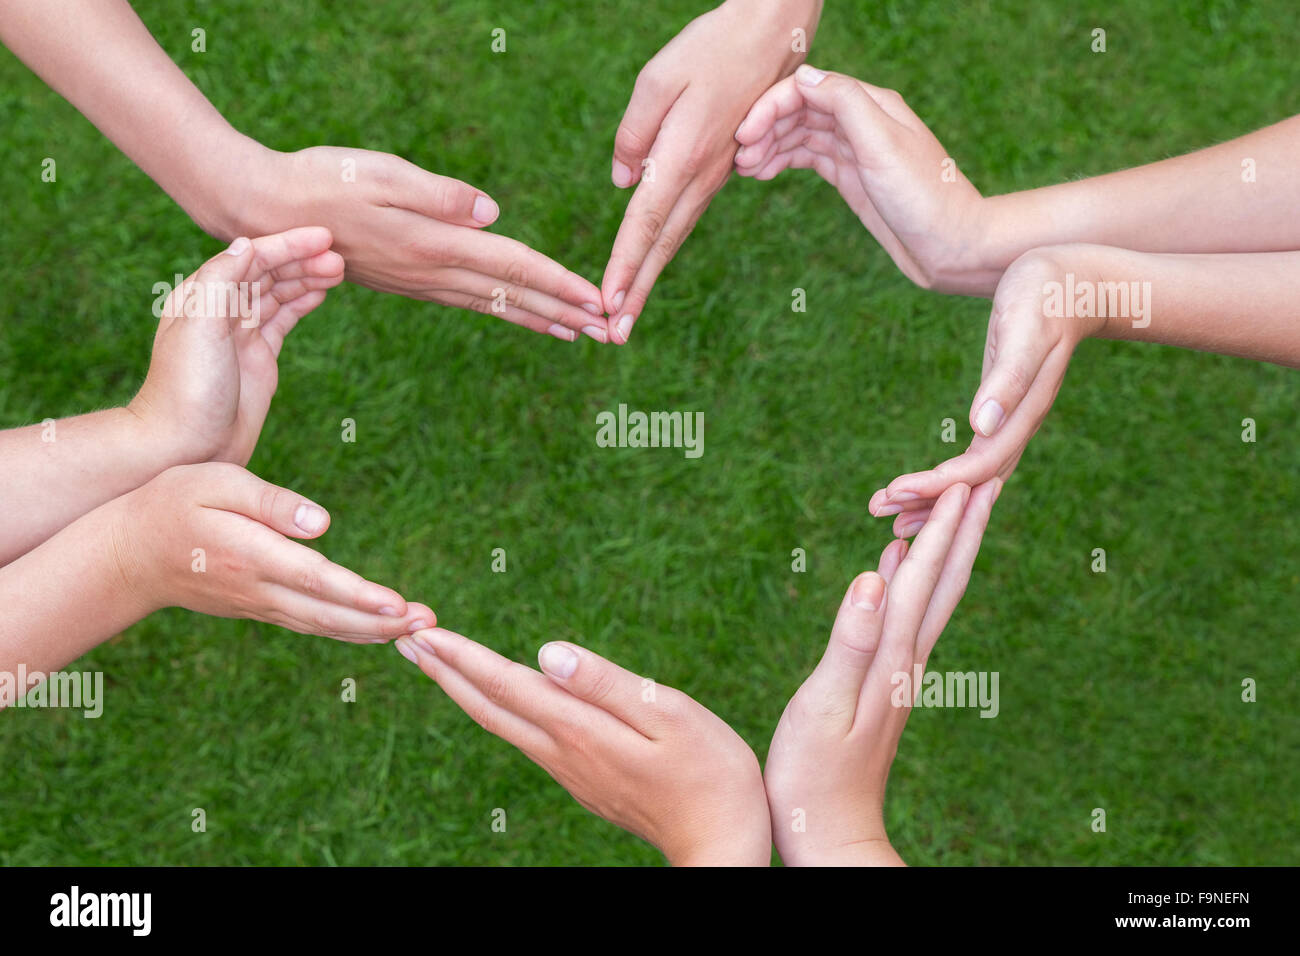 Molte le braccia e le mani di ragazze fanno forma di cuore al di sopra di erba verde Foto Stock